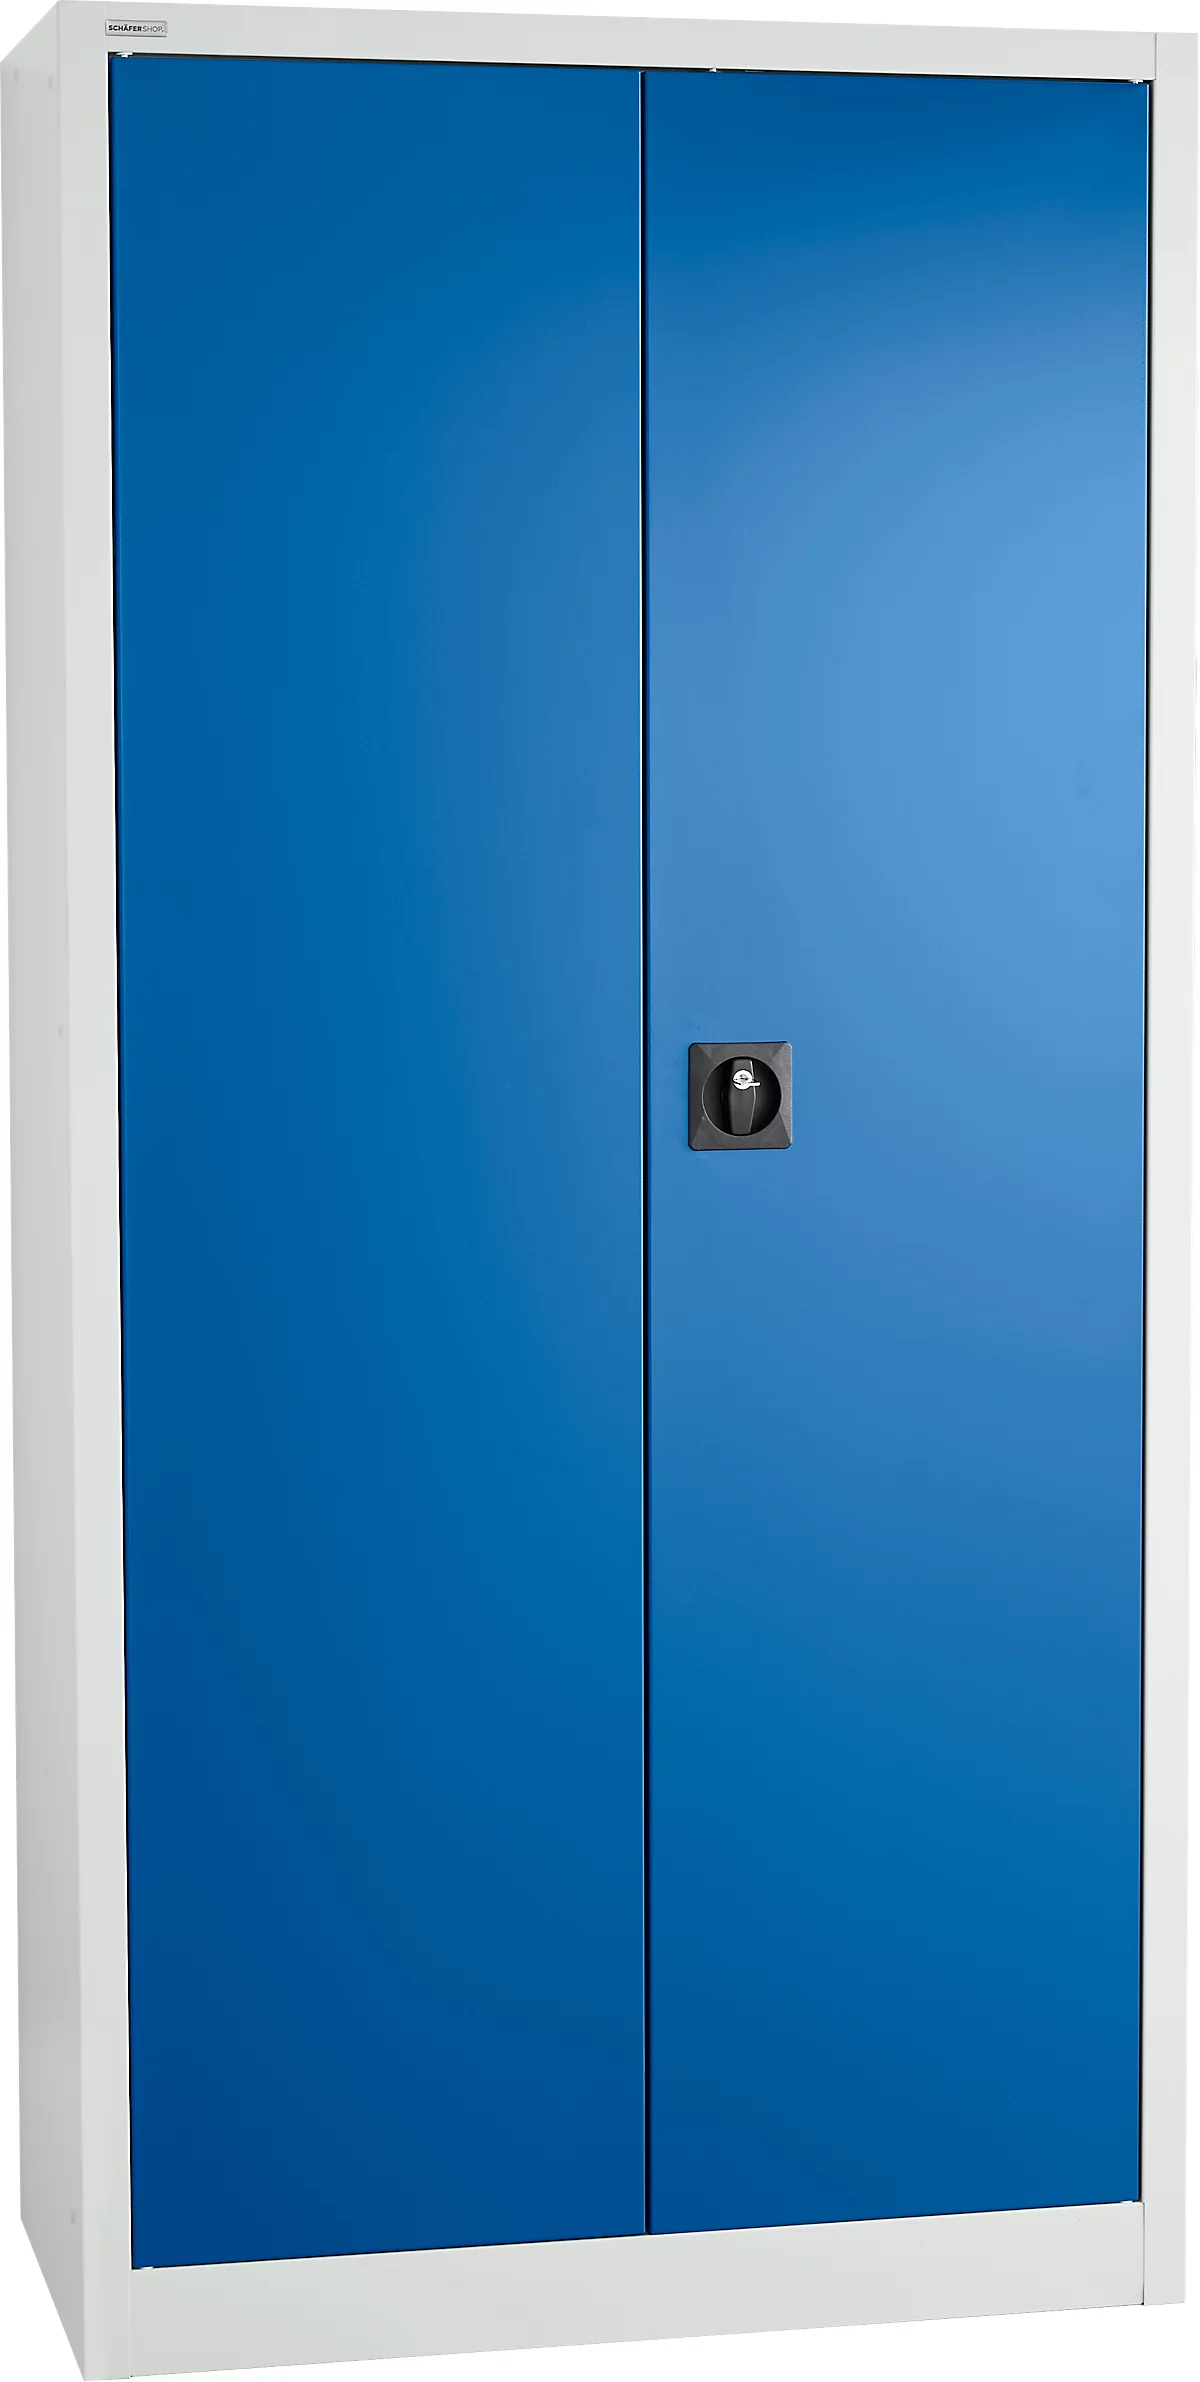 Armario de almacenamiento Schäfer Shop Select MSI 2509, 5 OH, 4 estantes intermedios, cerradura de cilindro, ancho 950 x fondo 500 x alto 1935 mm, gris claro RAL 7035/azul benigno RAL 5010